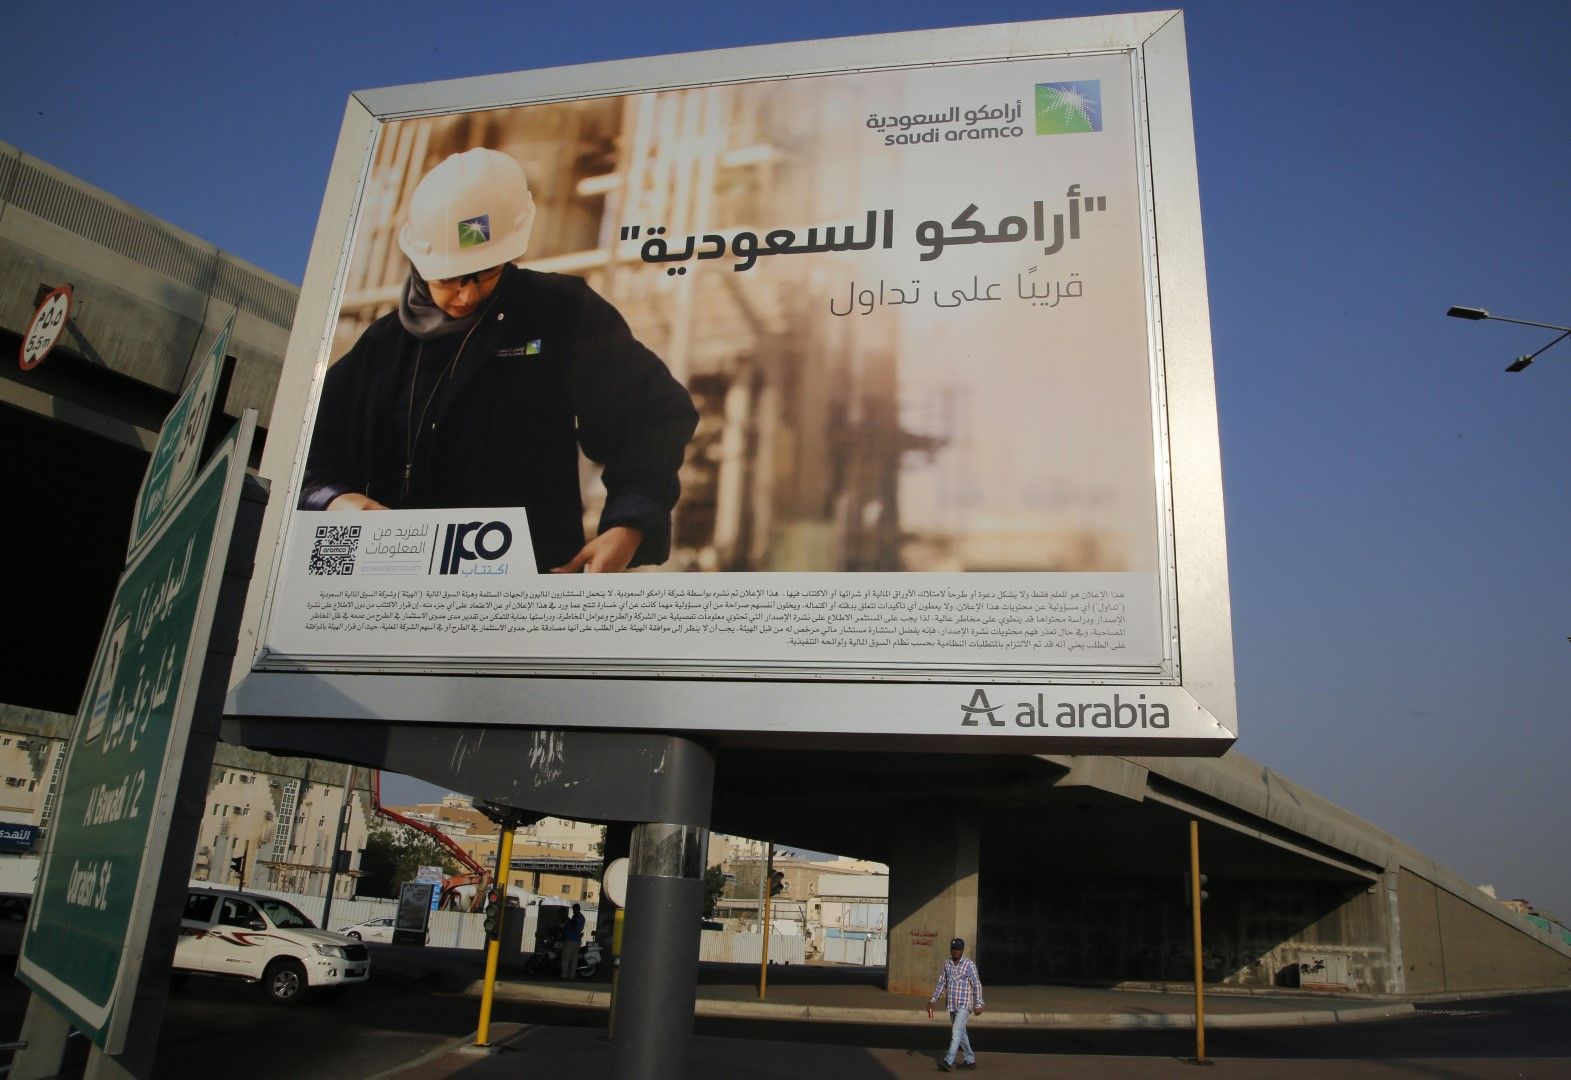 Арамко пуска акции на борсата - с билбордове приканва да се купуват ценните книжа: "Сауди Арамко" скоро на фондовата борса"